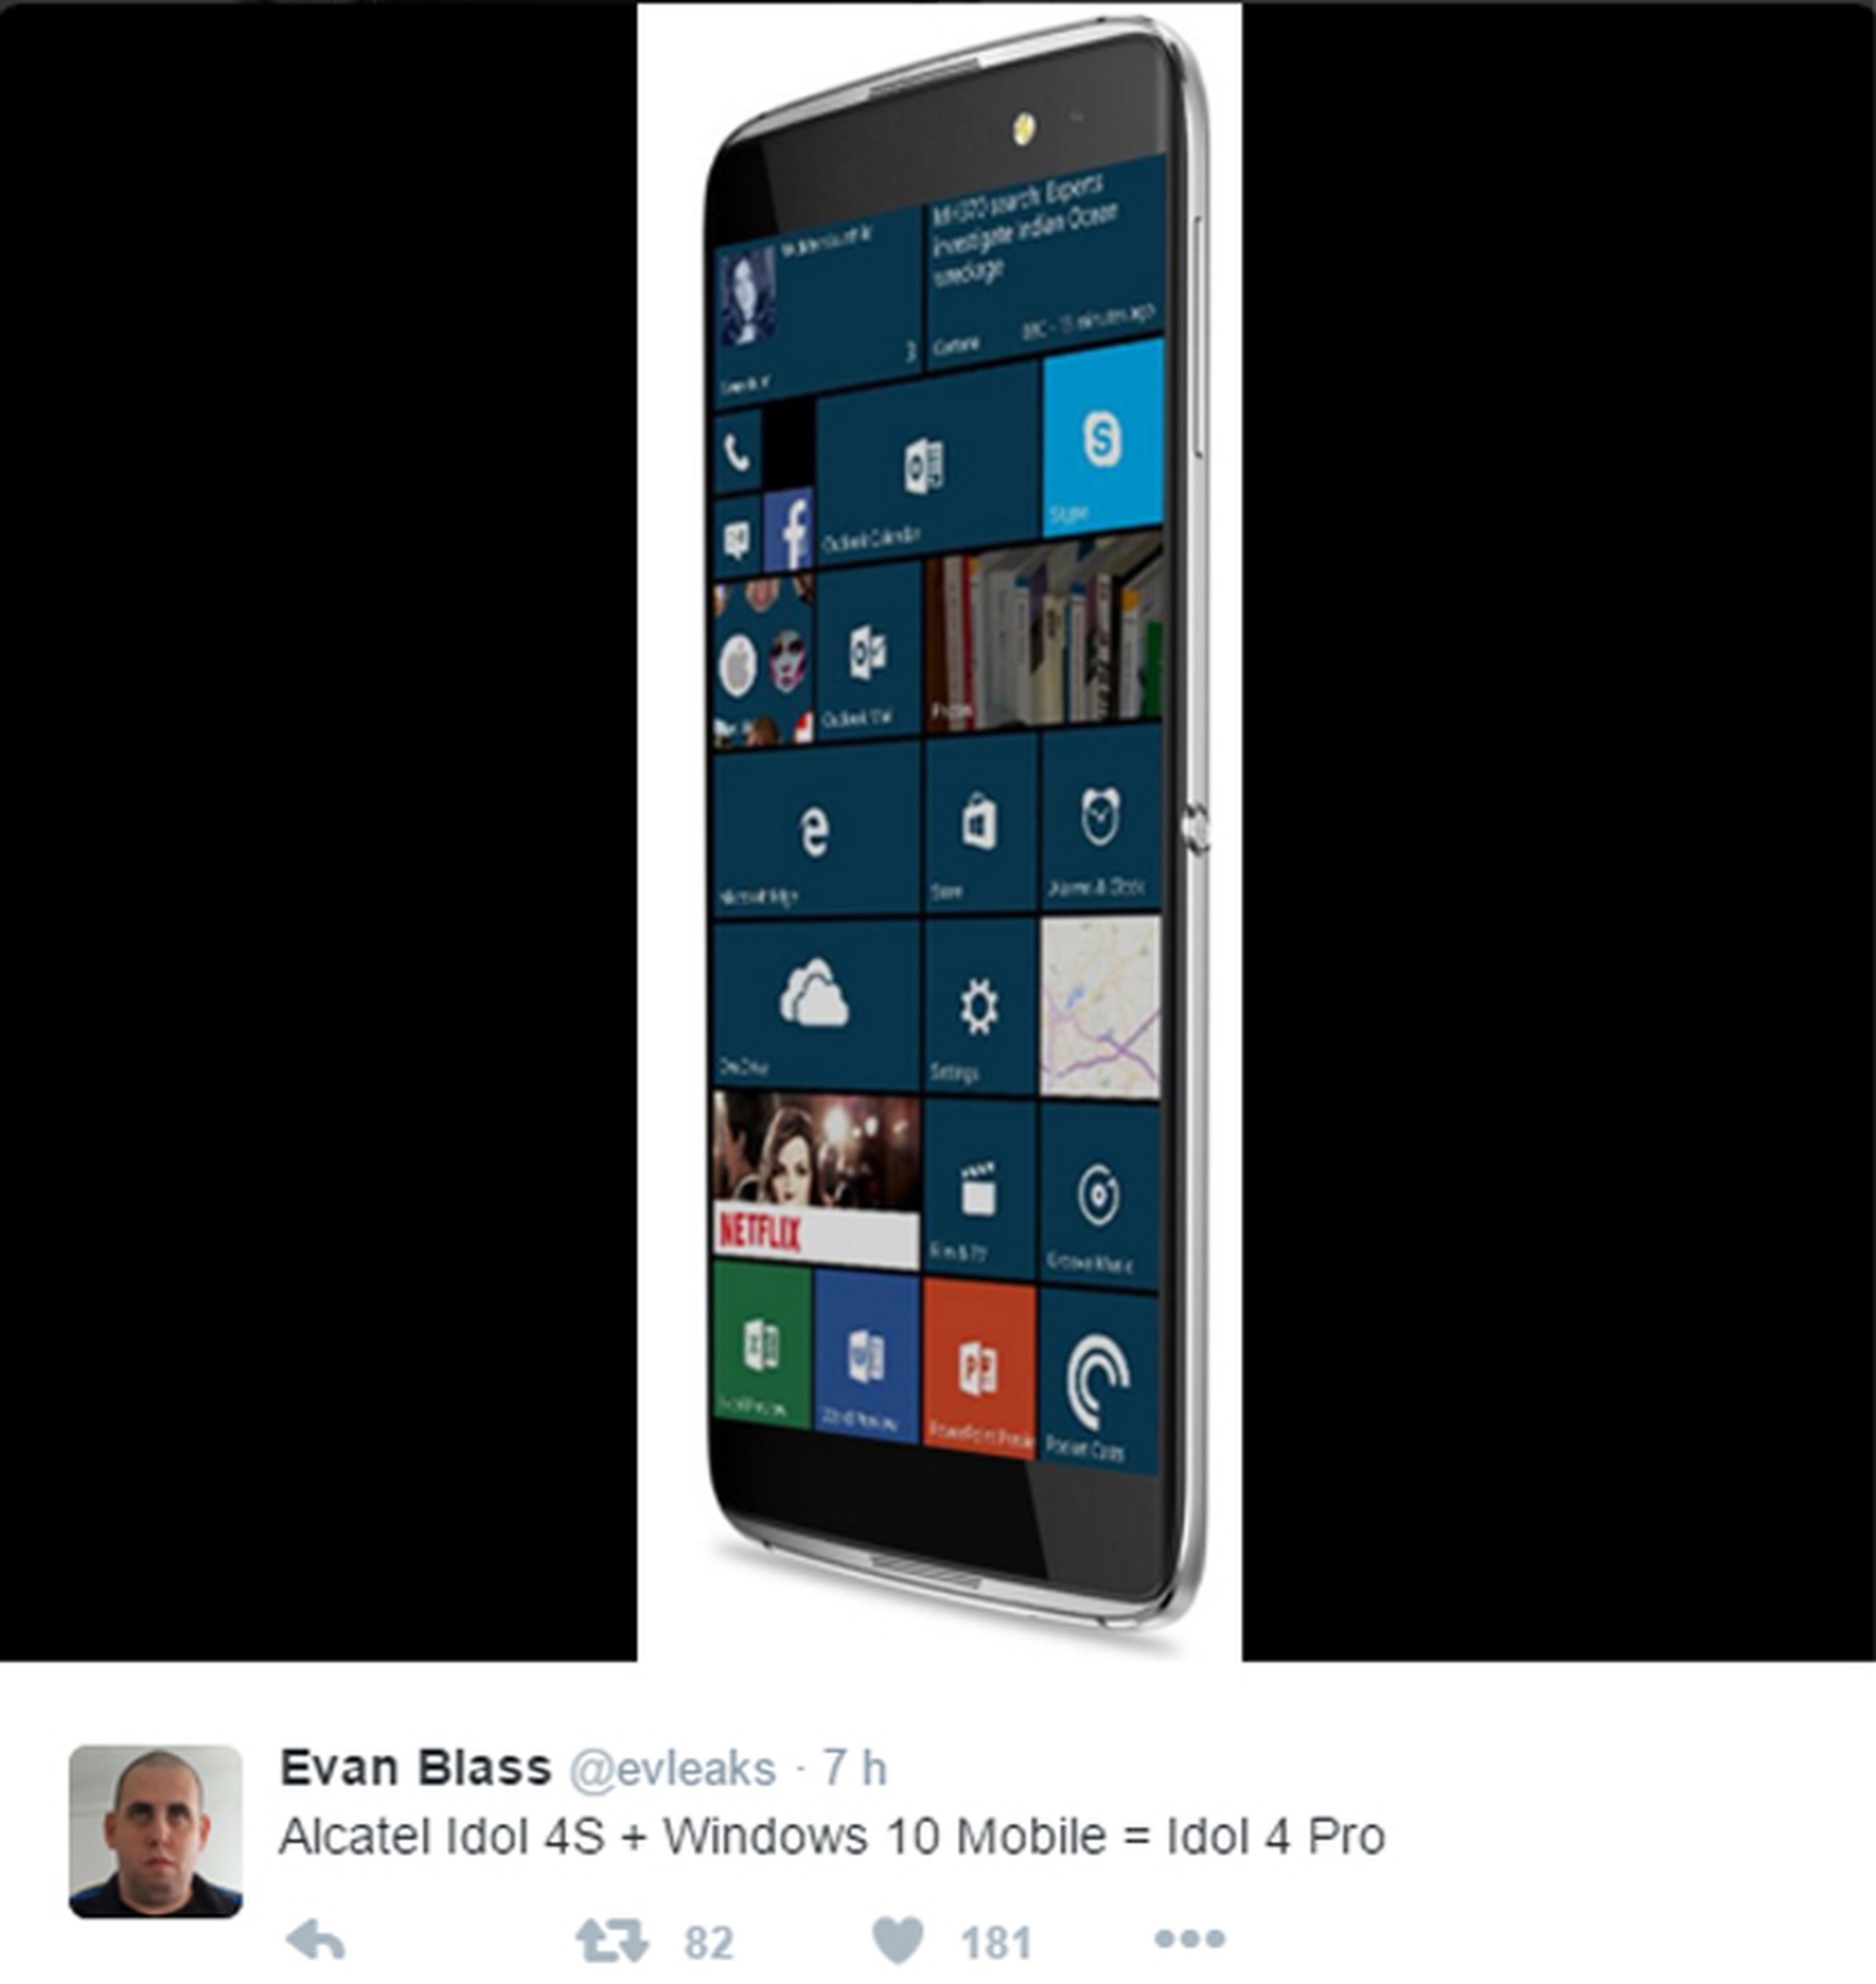 Imagen filtrada del Alcatel Idol 4 Pro con Windows 10